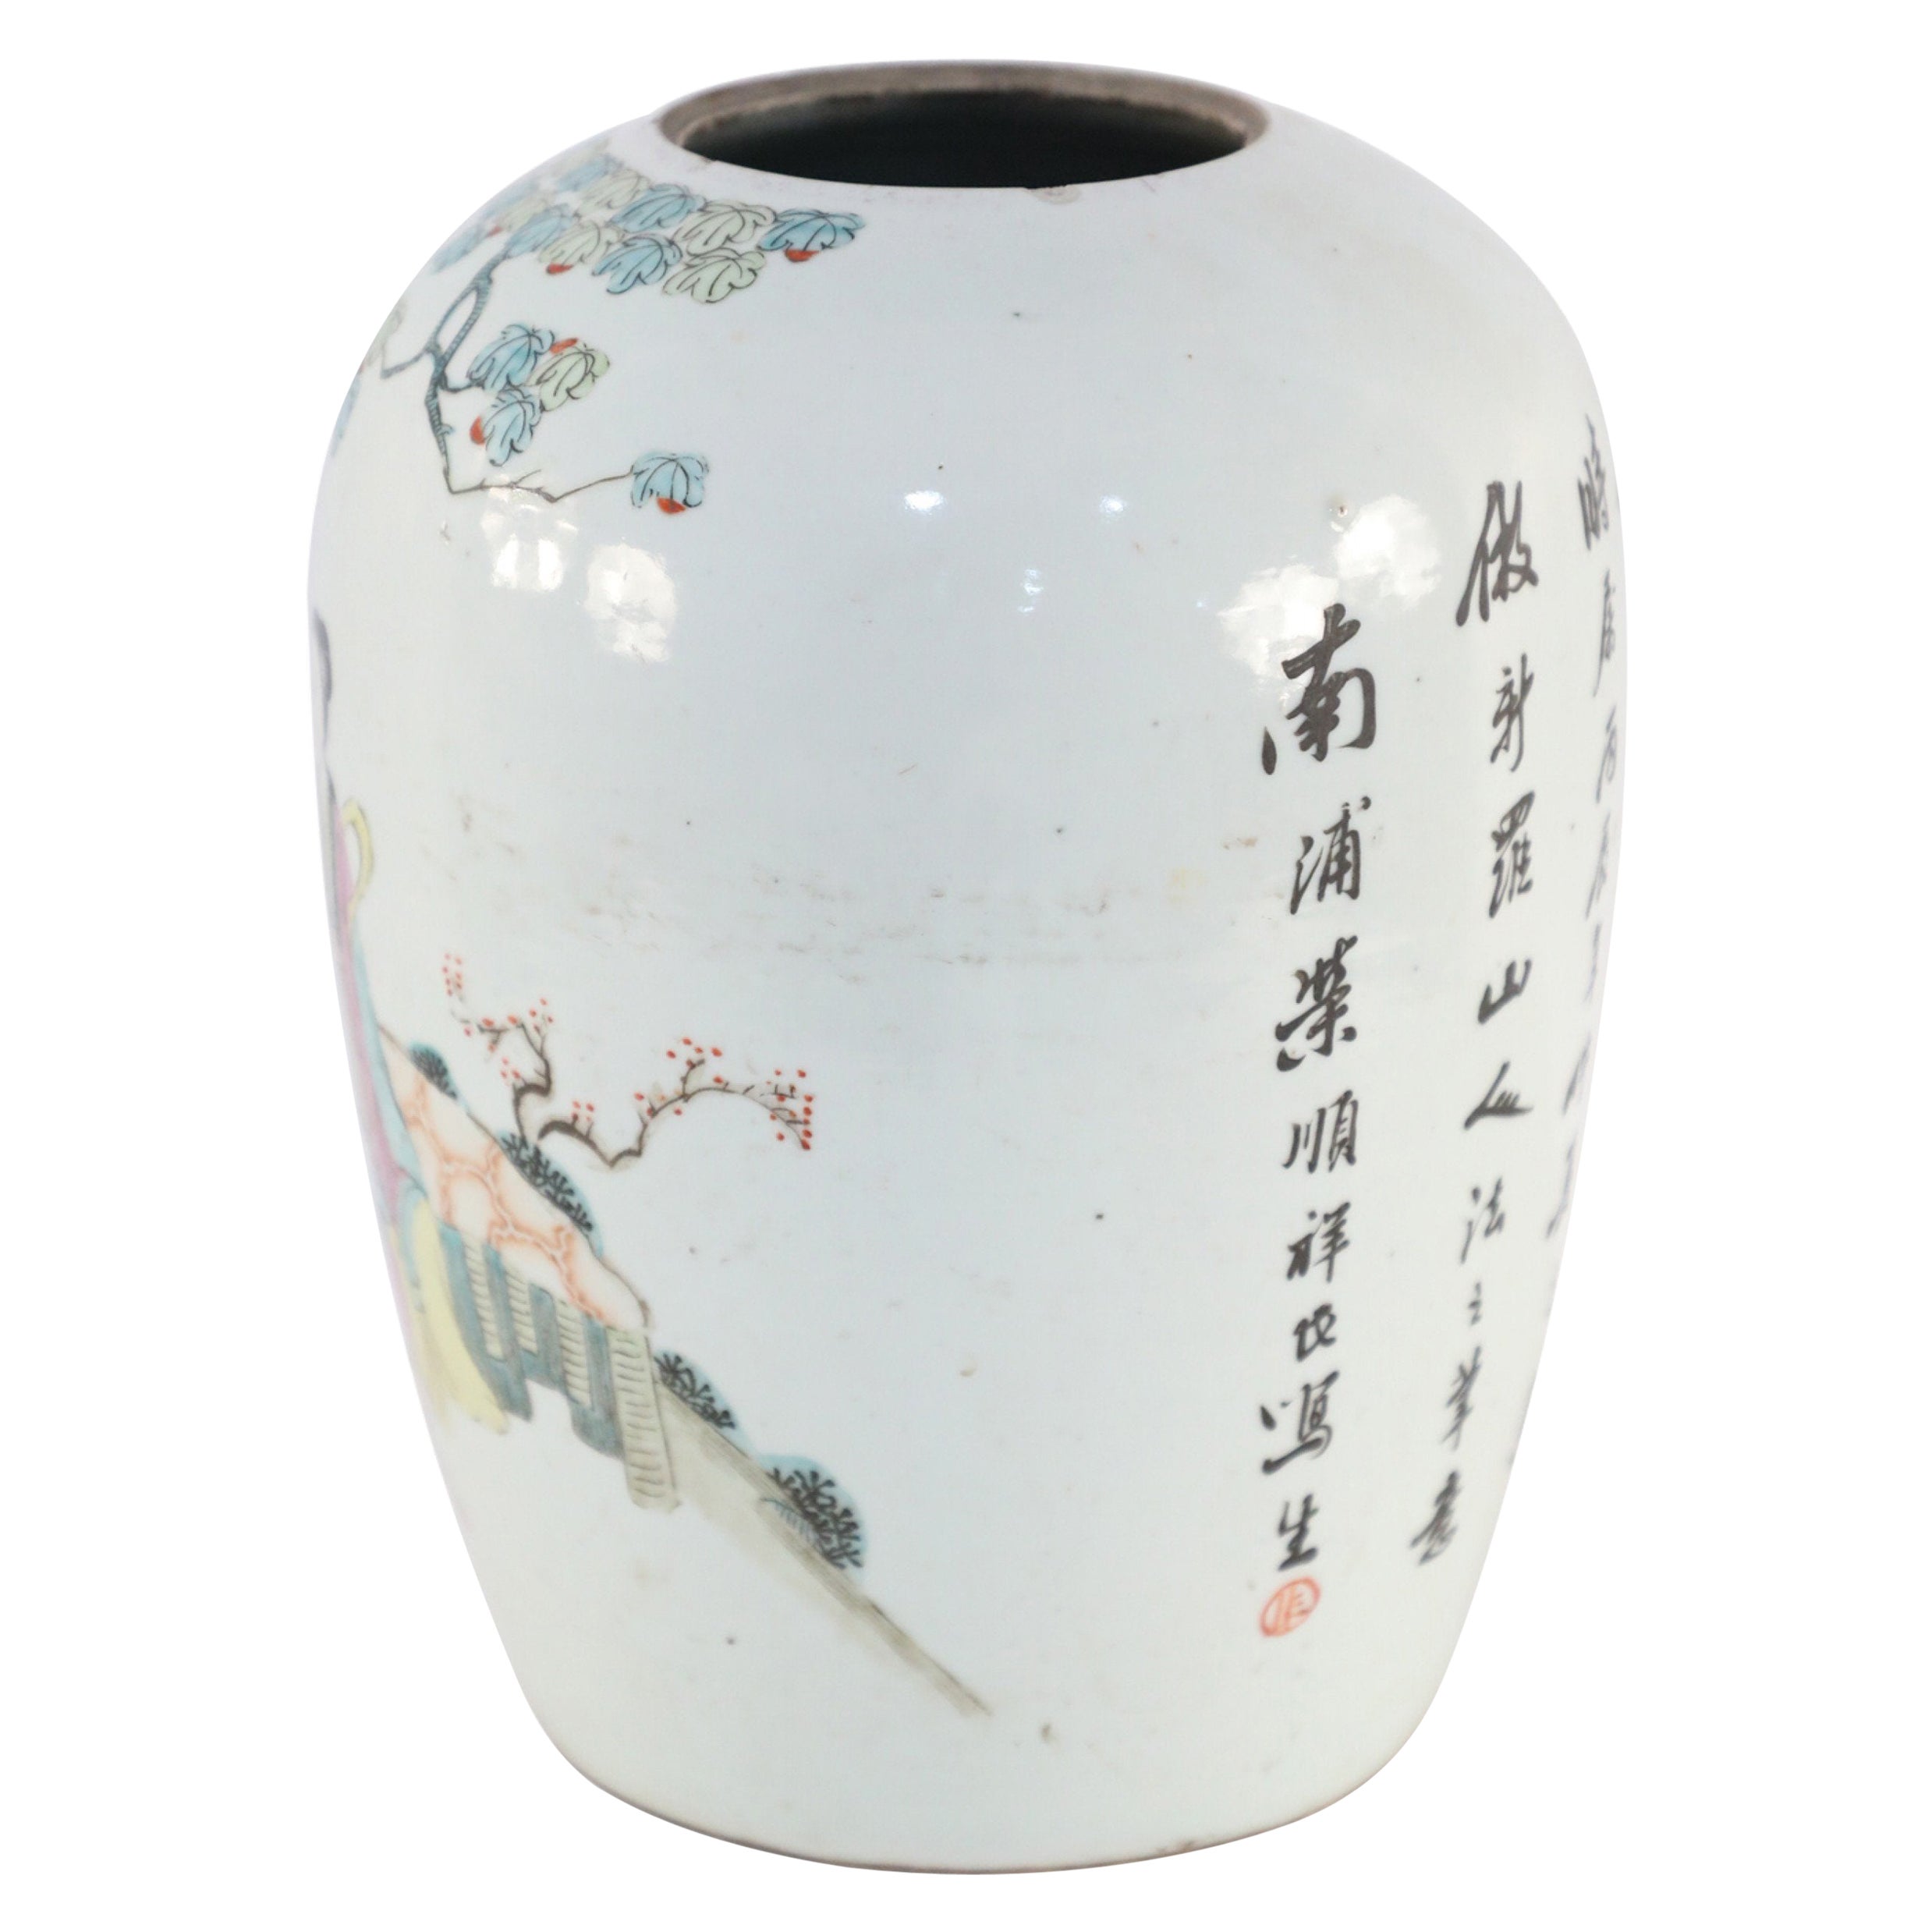 Chinesische weiße und figurative Porzellan-Wintermelonenvase mit Szene aus Porzellan